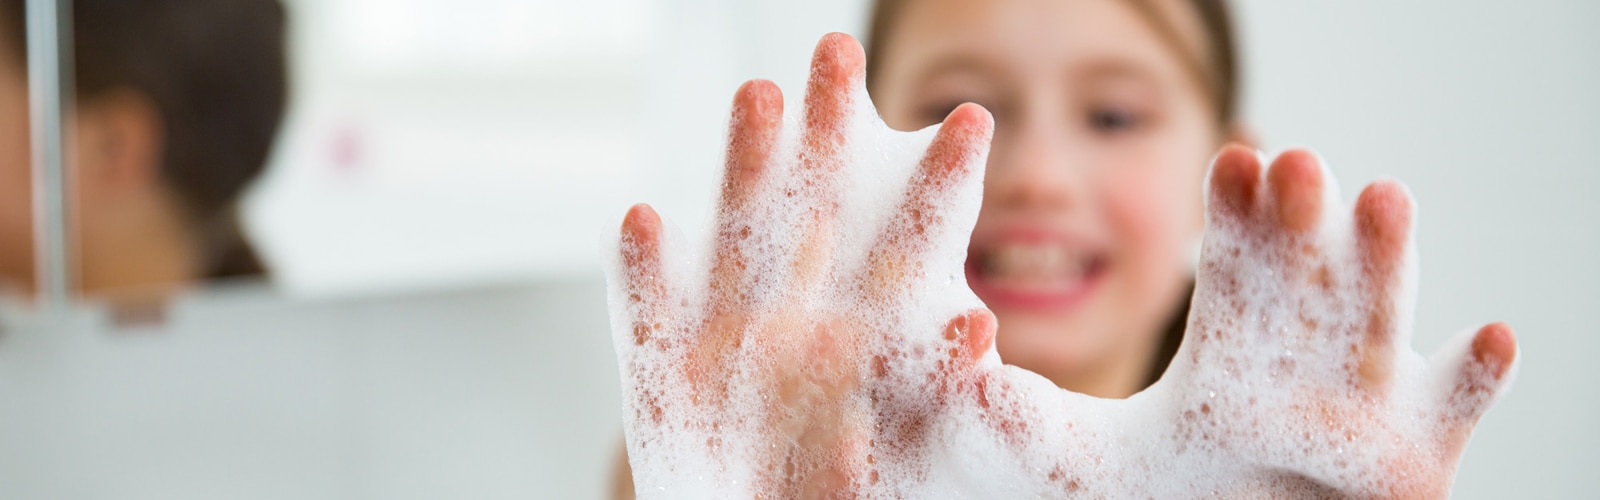 Die Hände eines Mädchens sind mit Seife eingeschäumt